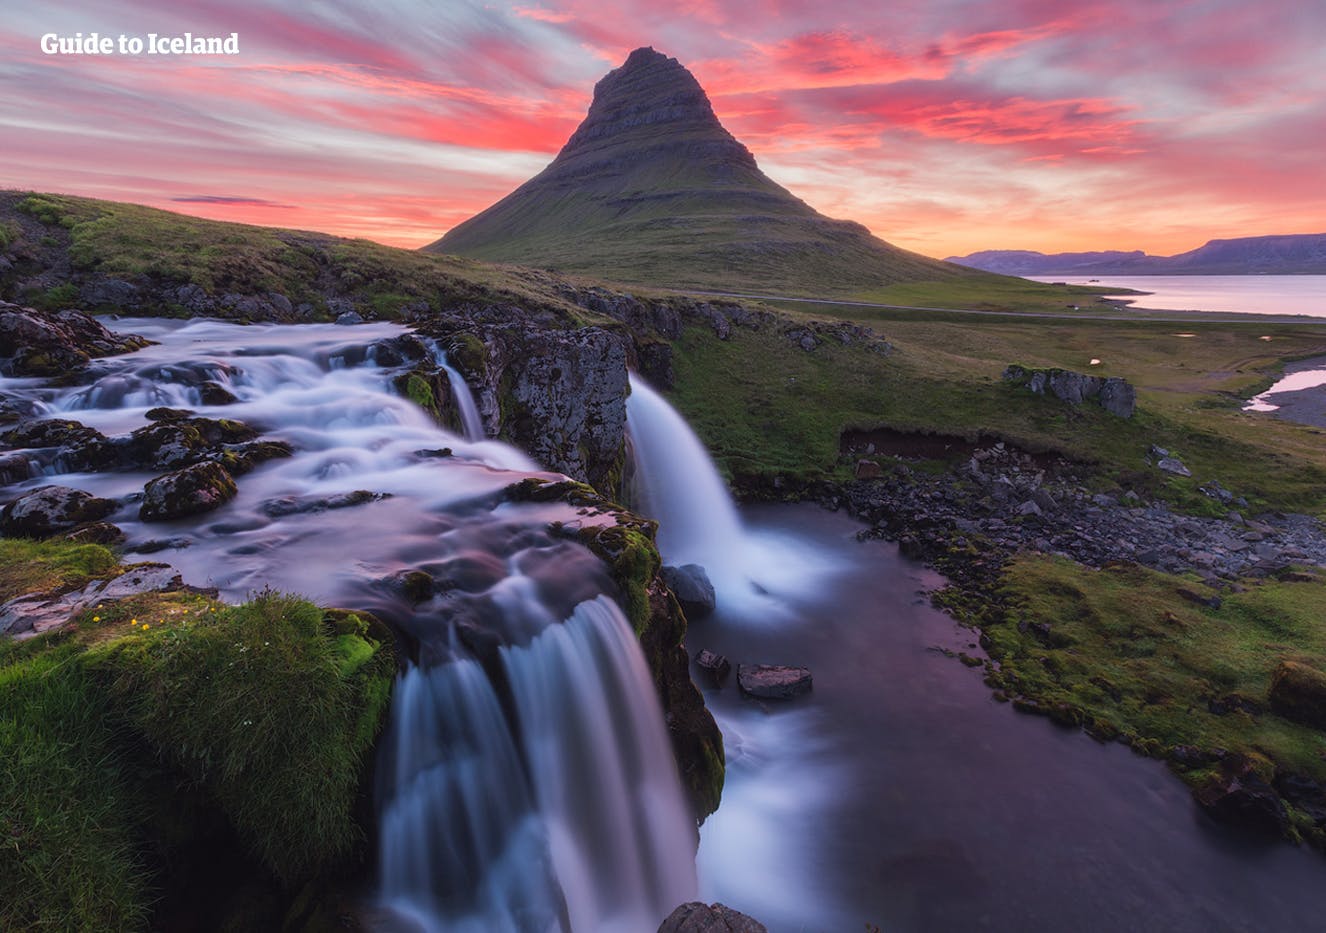 De berg Kirkjufell in Snaefellsnes (West-IJsland) was te zien in de HBO-serie Game of Thrones.